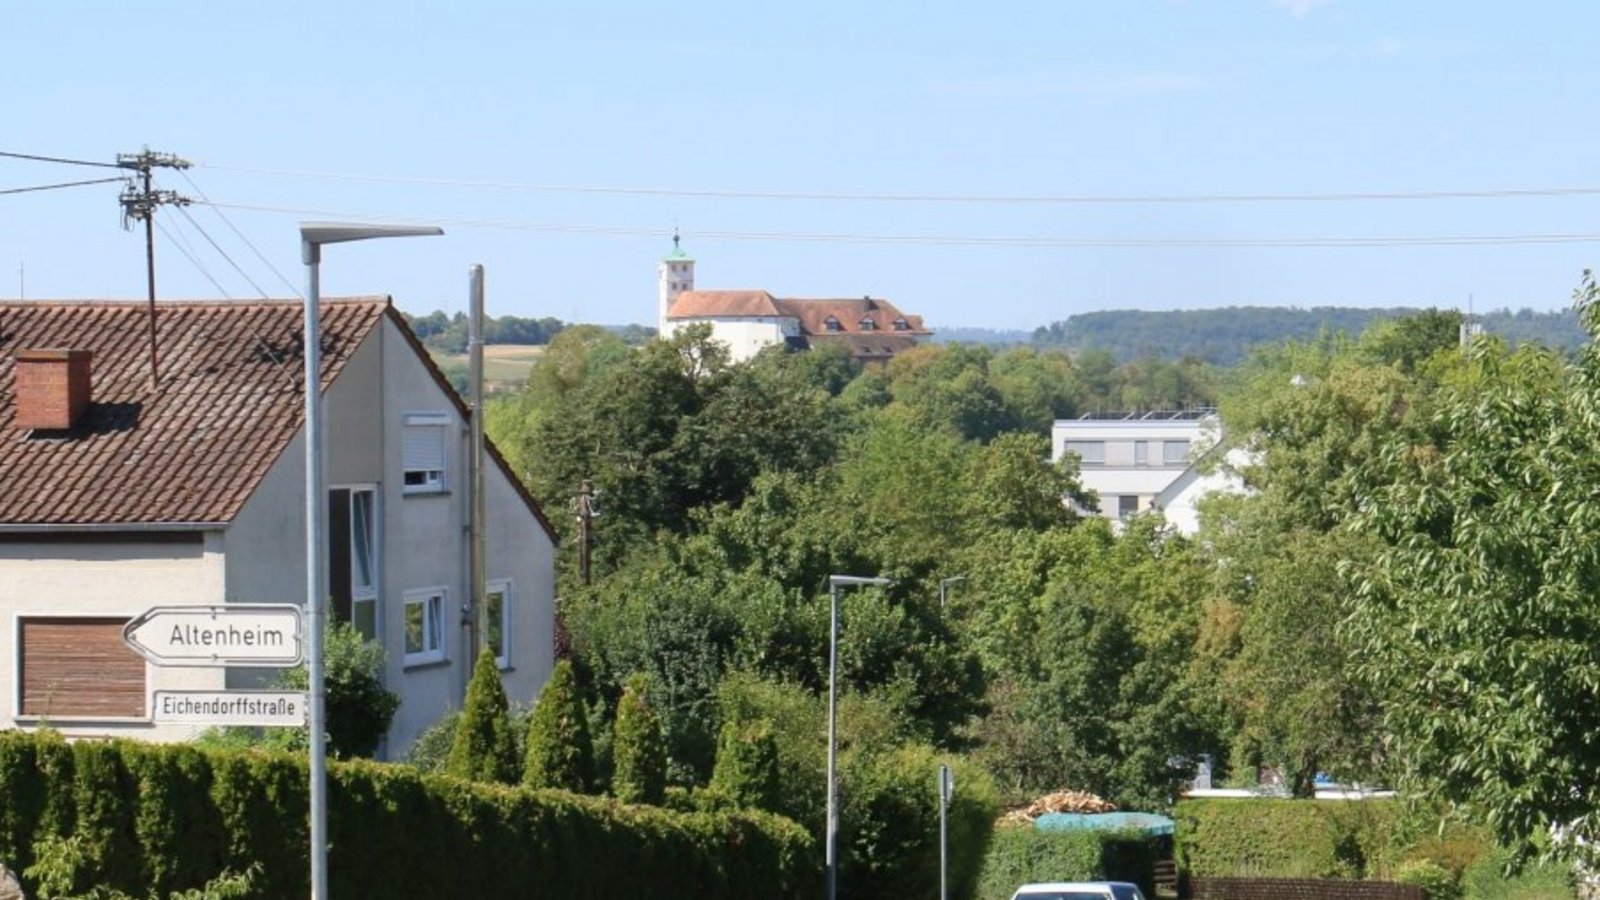 2. Nach der Gerokstraße geht es den Hügel hinab mit Blick auf Schloss Kaltenstein.